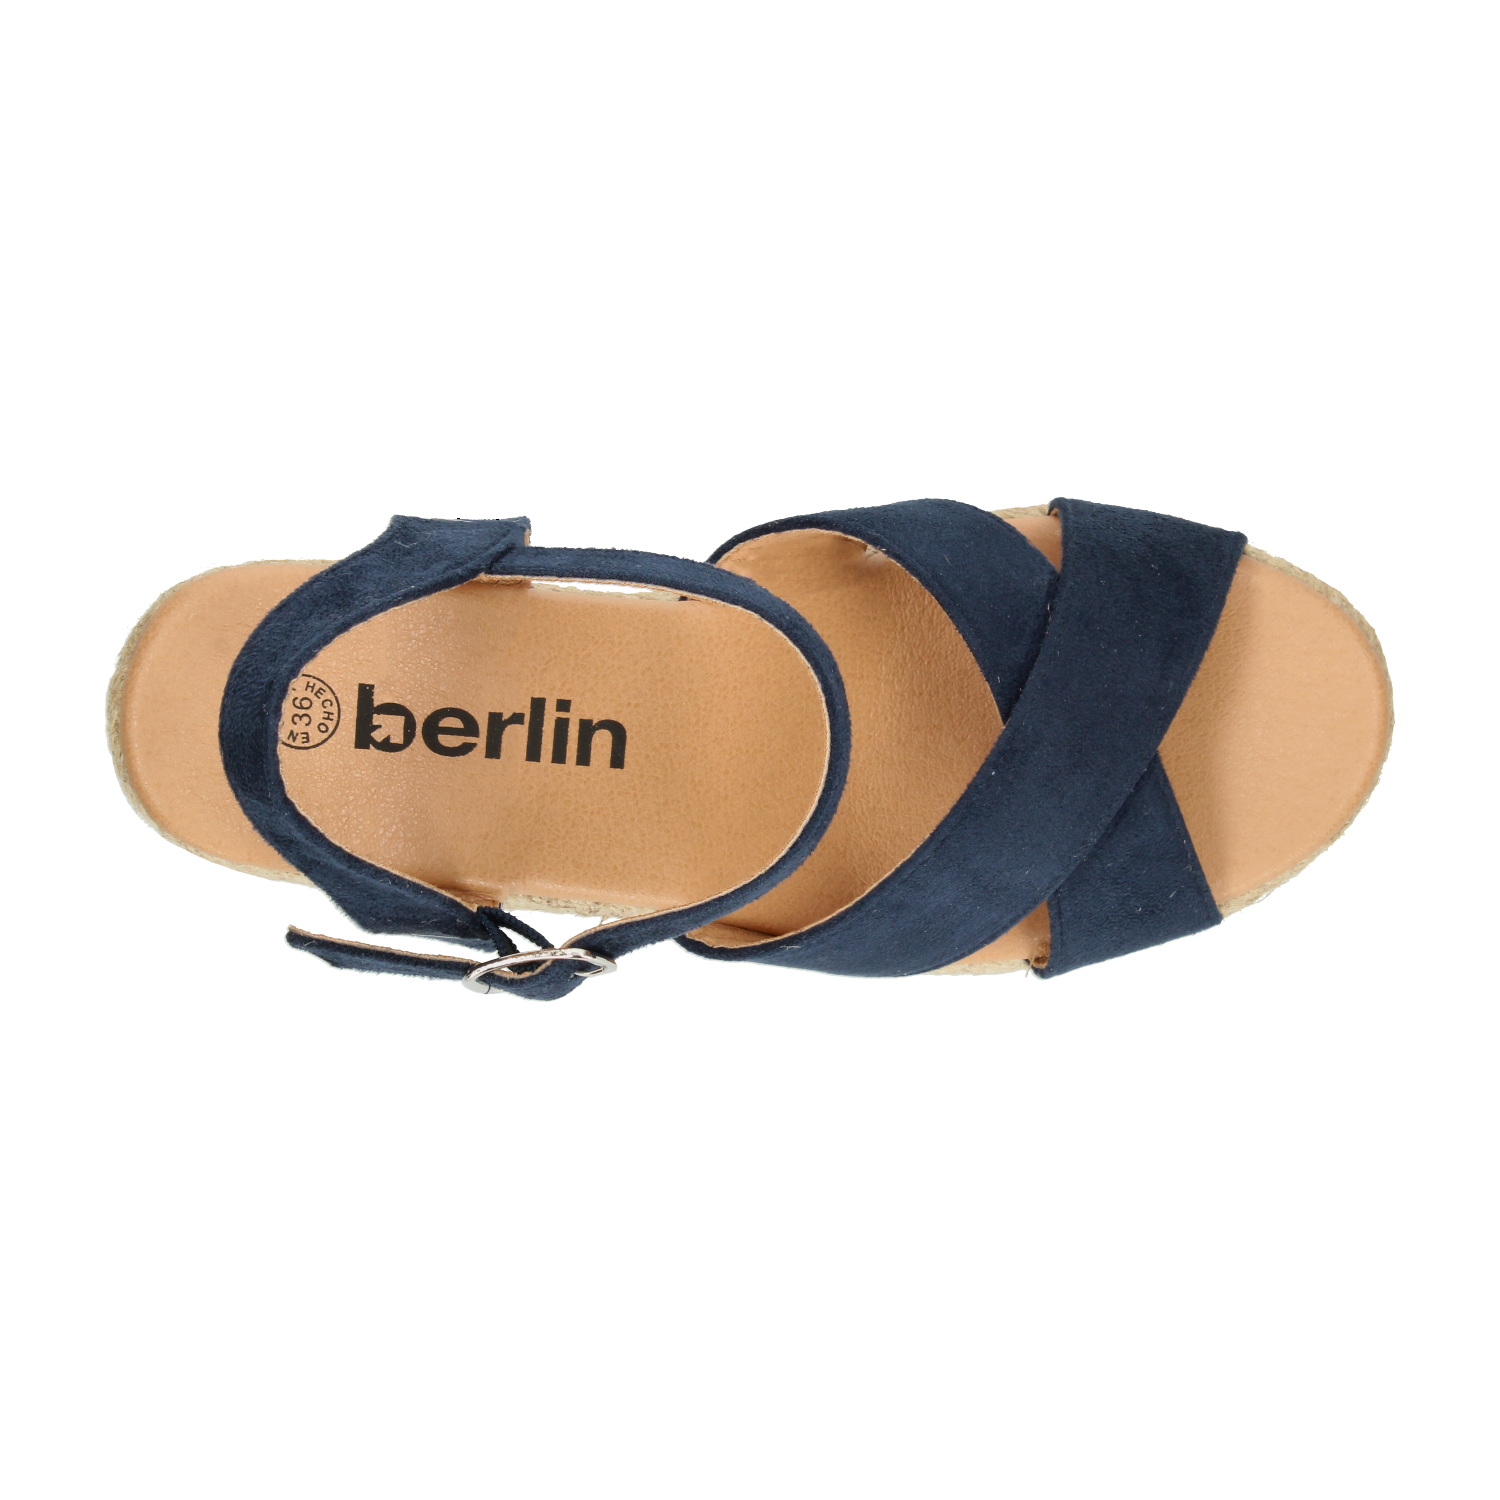 Sandalias Berlin Azul Marino para Mujer [BLI41]